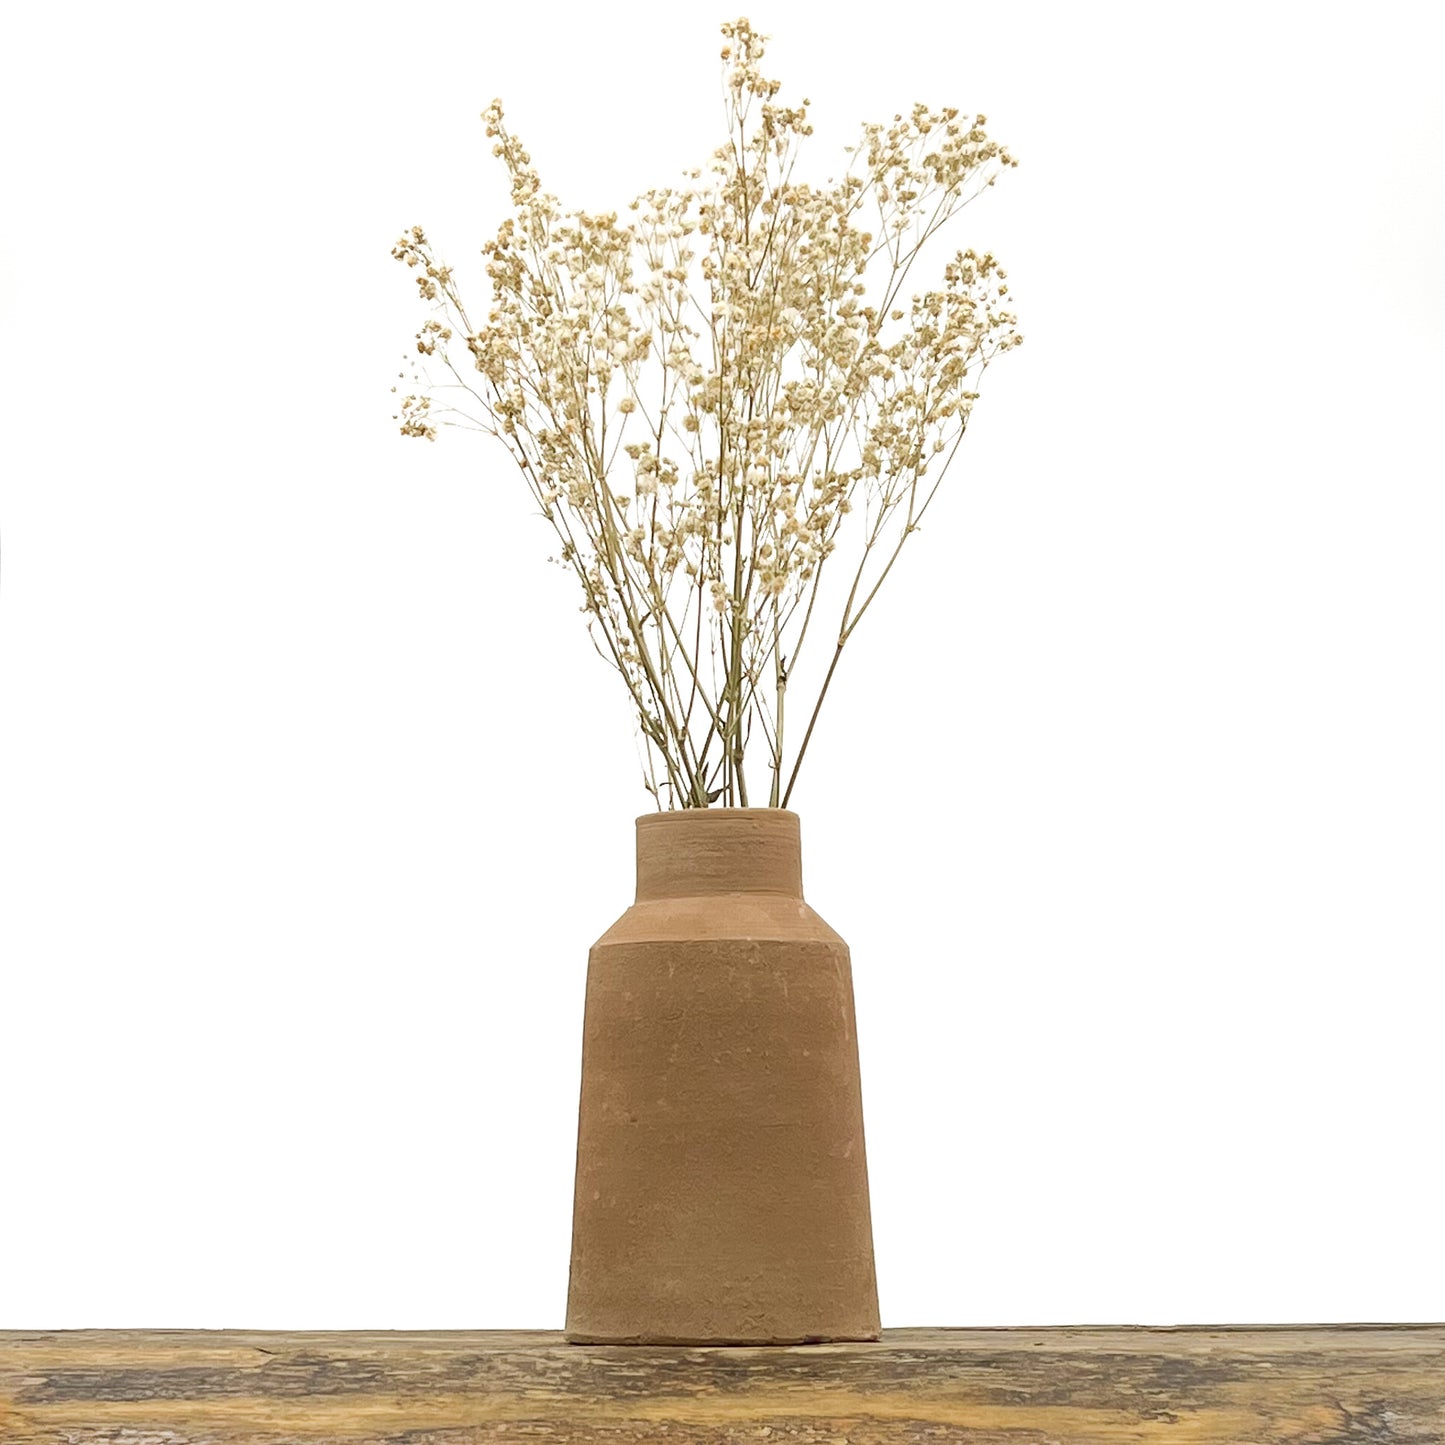 Vase au design épuré en terre cuite fait main. Hauteur 17 cm, largeur de la base 10 cm. Livré avec fleurs séchées offertes.